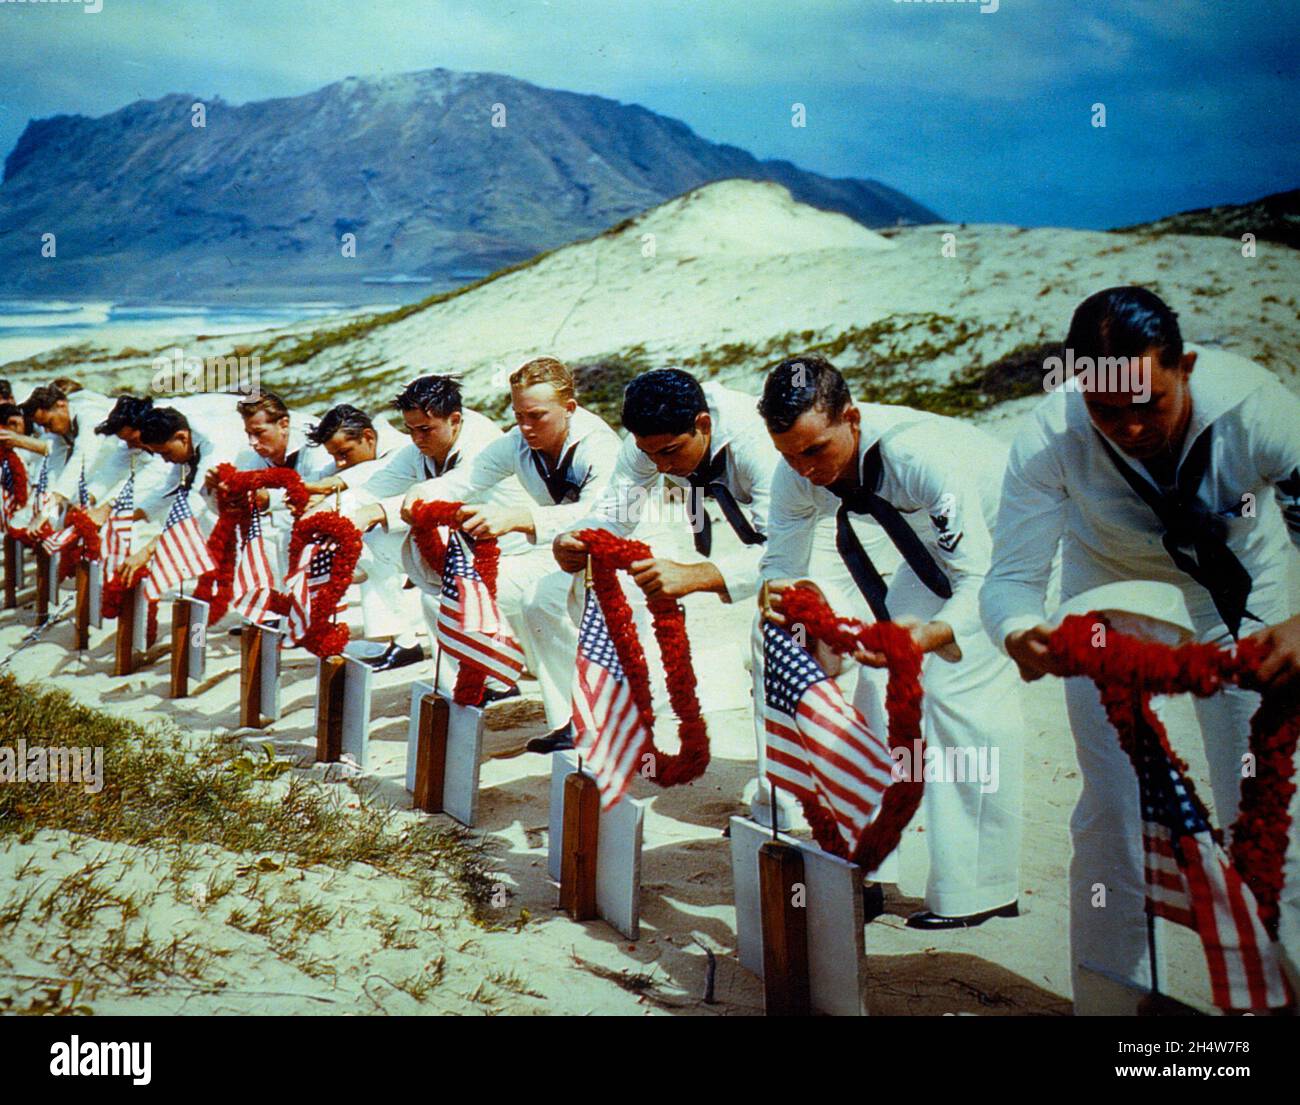 Los marineros rinden homenaje a las víctimas del ataque de Pearl Harbor en un cementerio de las islas hawaianas, alrededor de la primavera de 1942, posiblemente el Día de los Caídos. Foto de stock